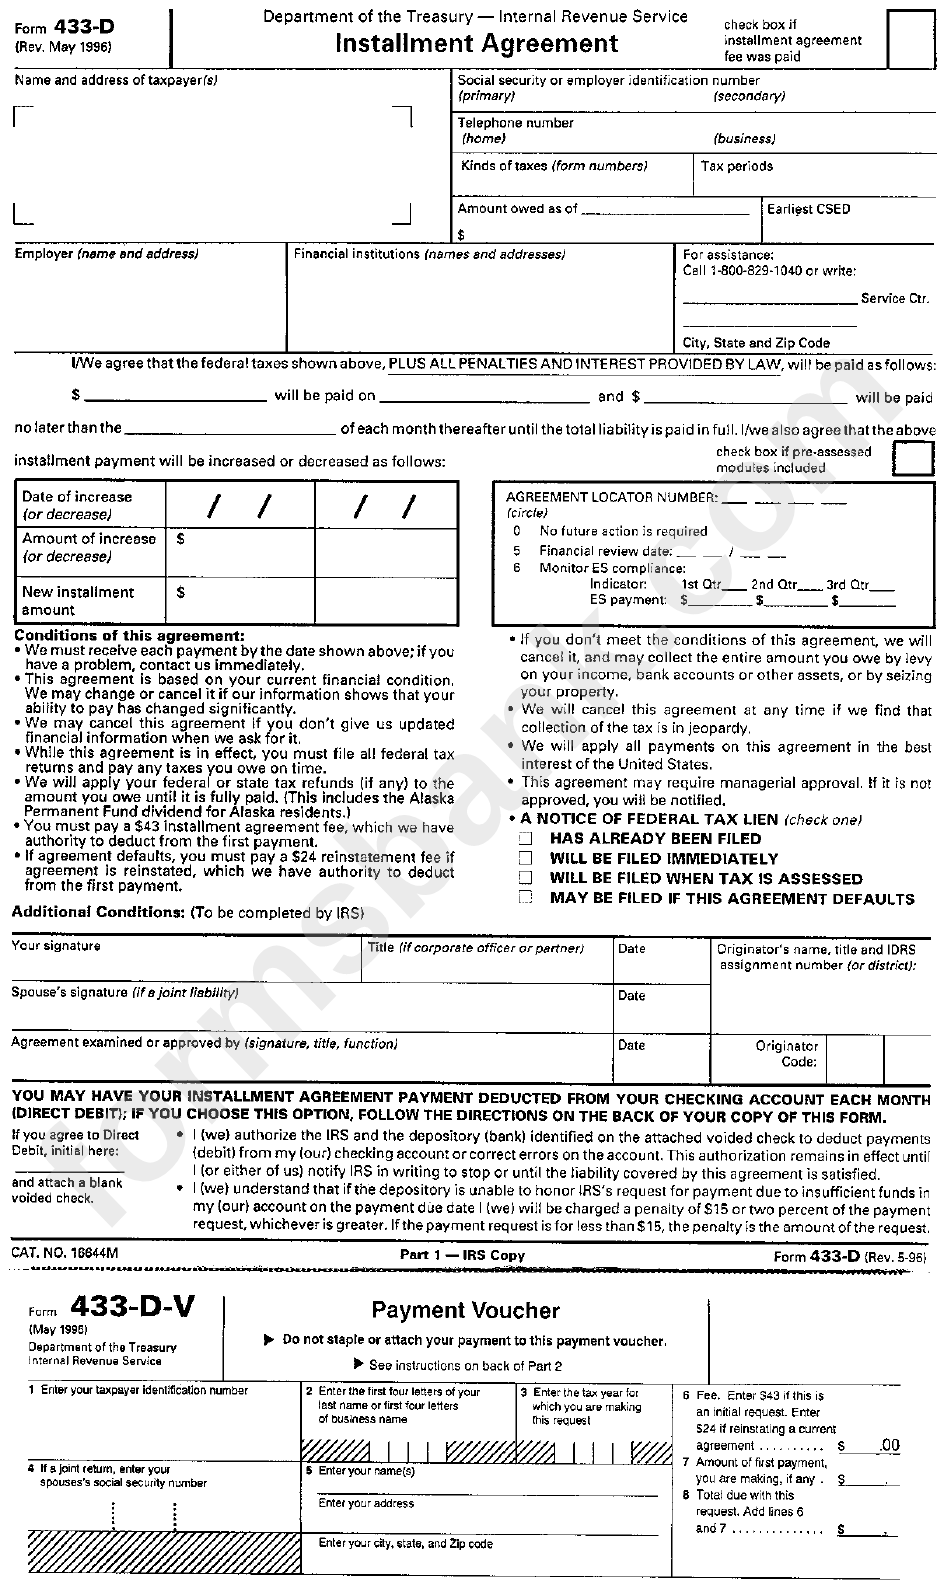 Form 433-D - Installment Agreement